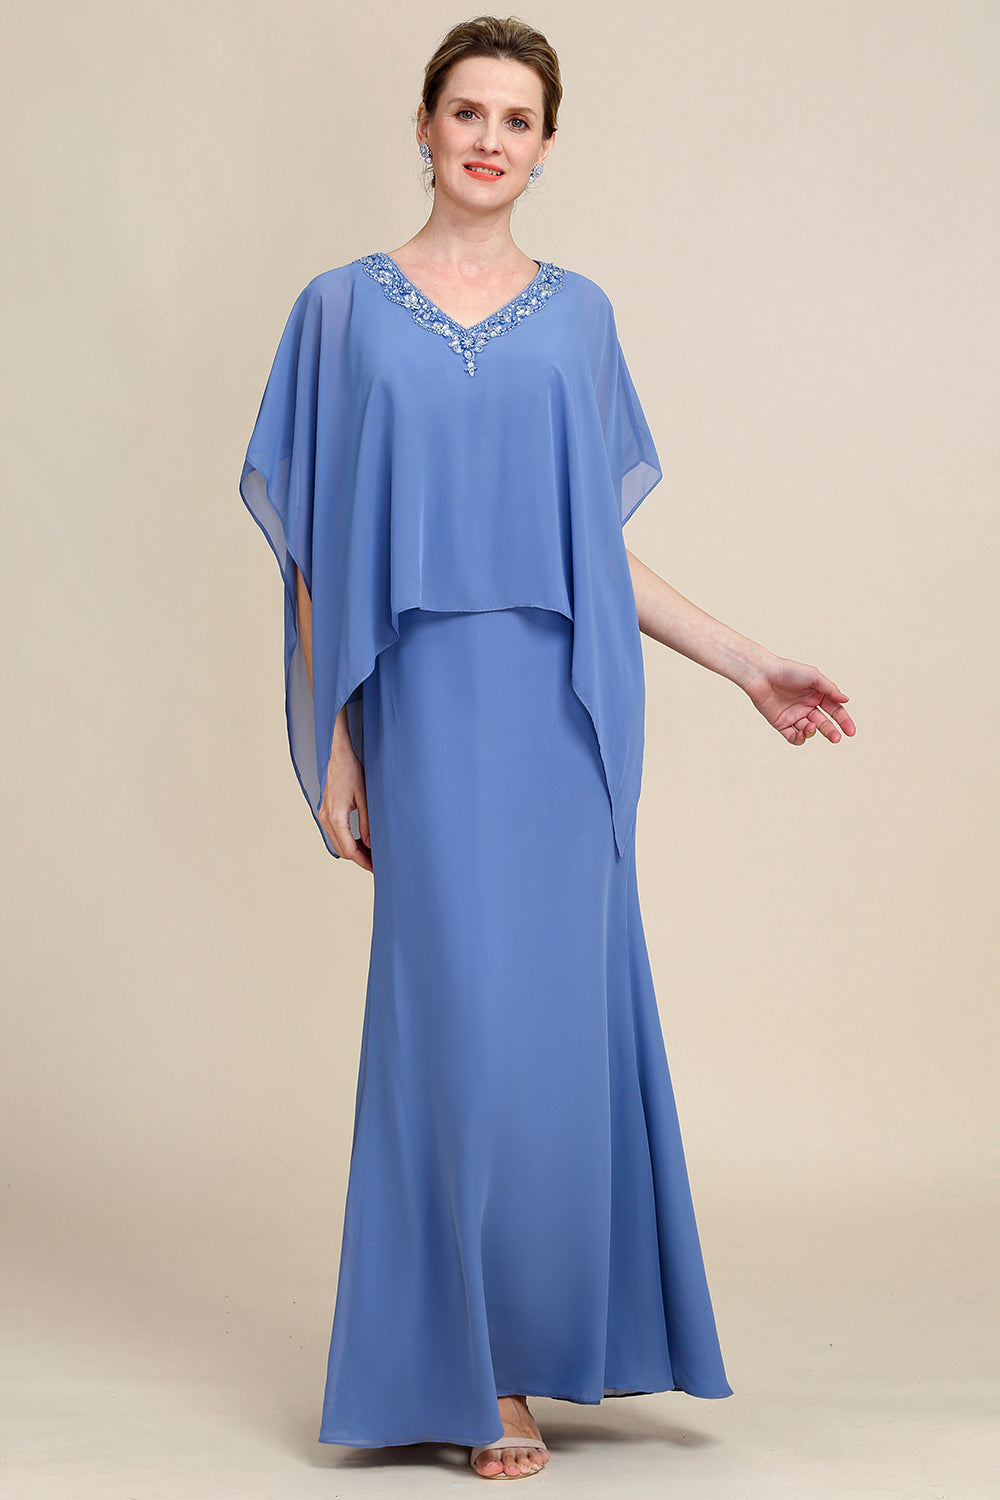 Niebieska Błyszczące Batwing Rękawy Sukienki Na Wesele Dla Mamy z Koralikami